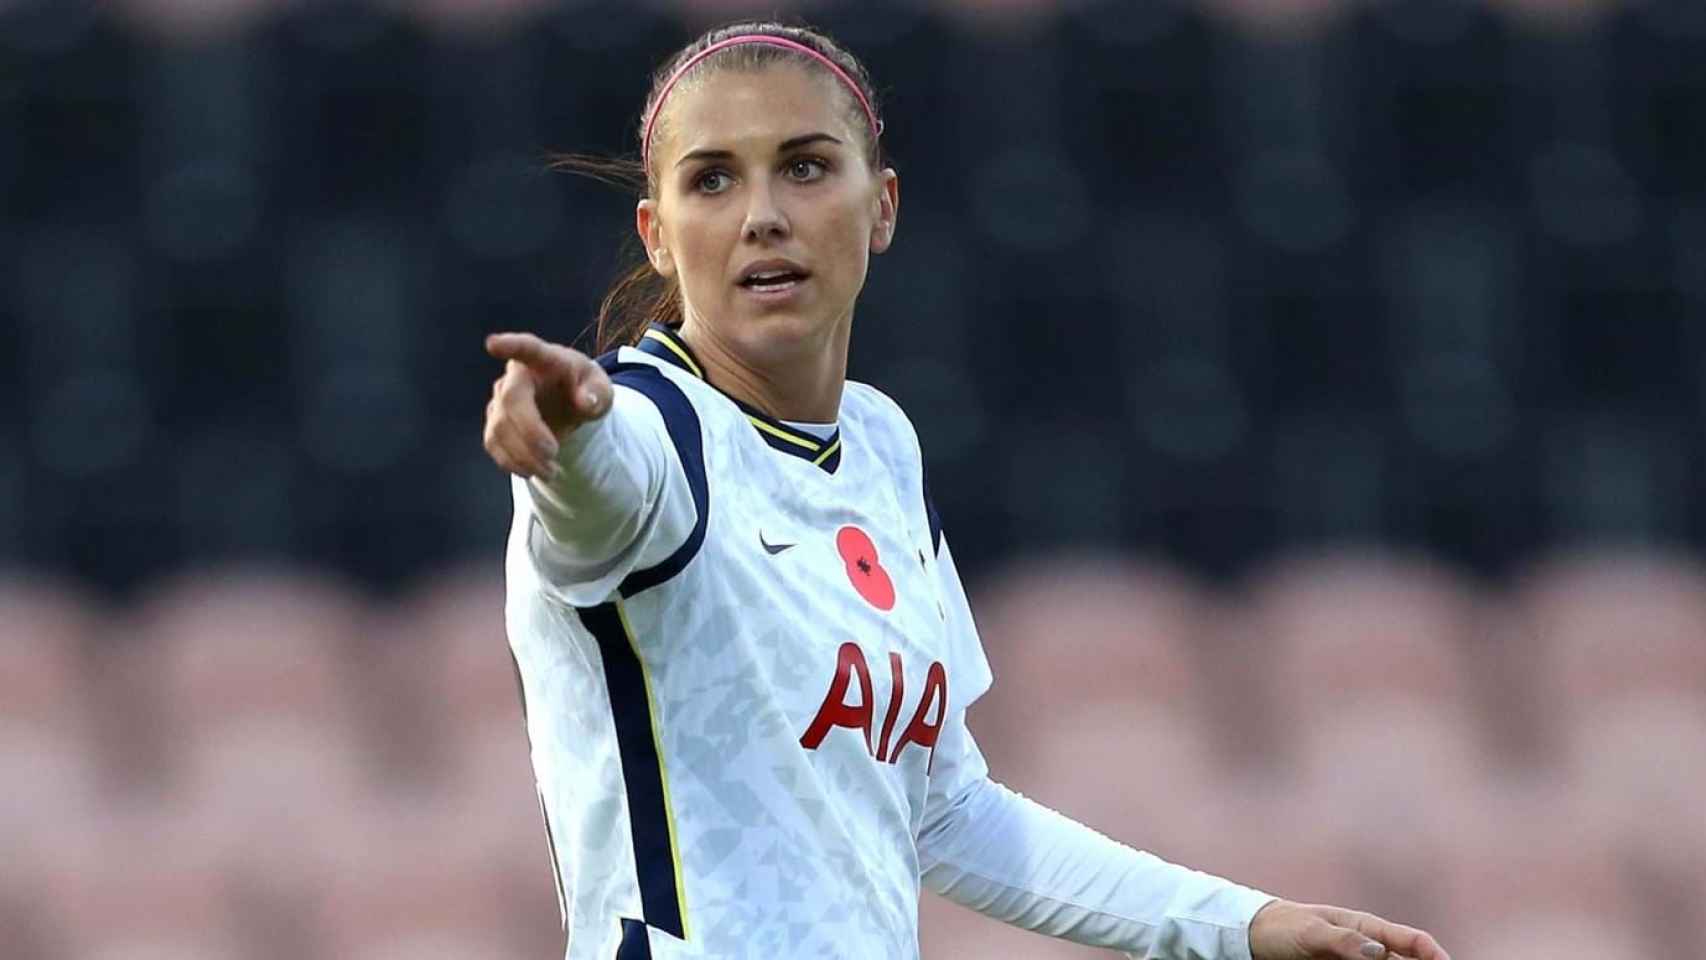 La delantera Alex Morgan, en un partido del Tottenham femenino